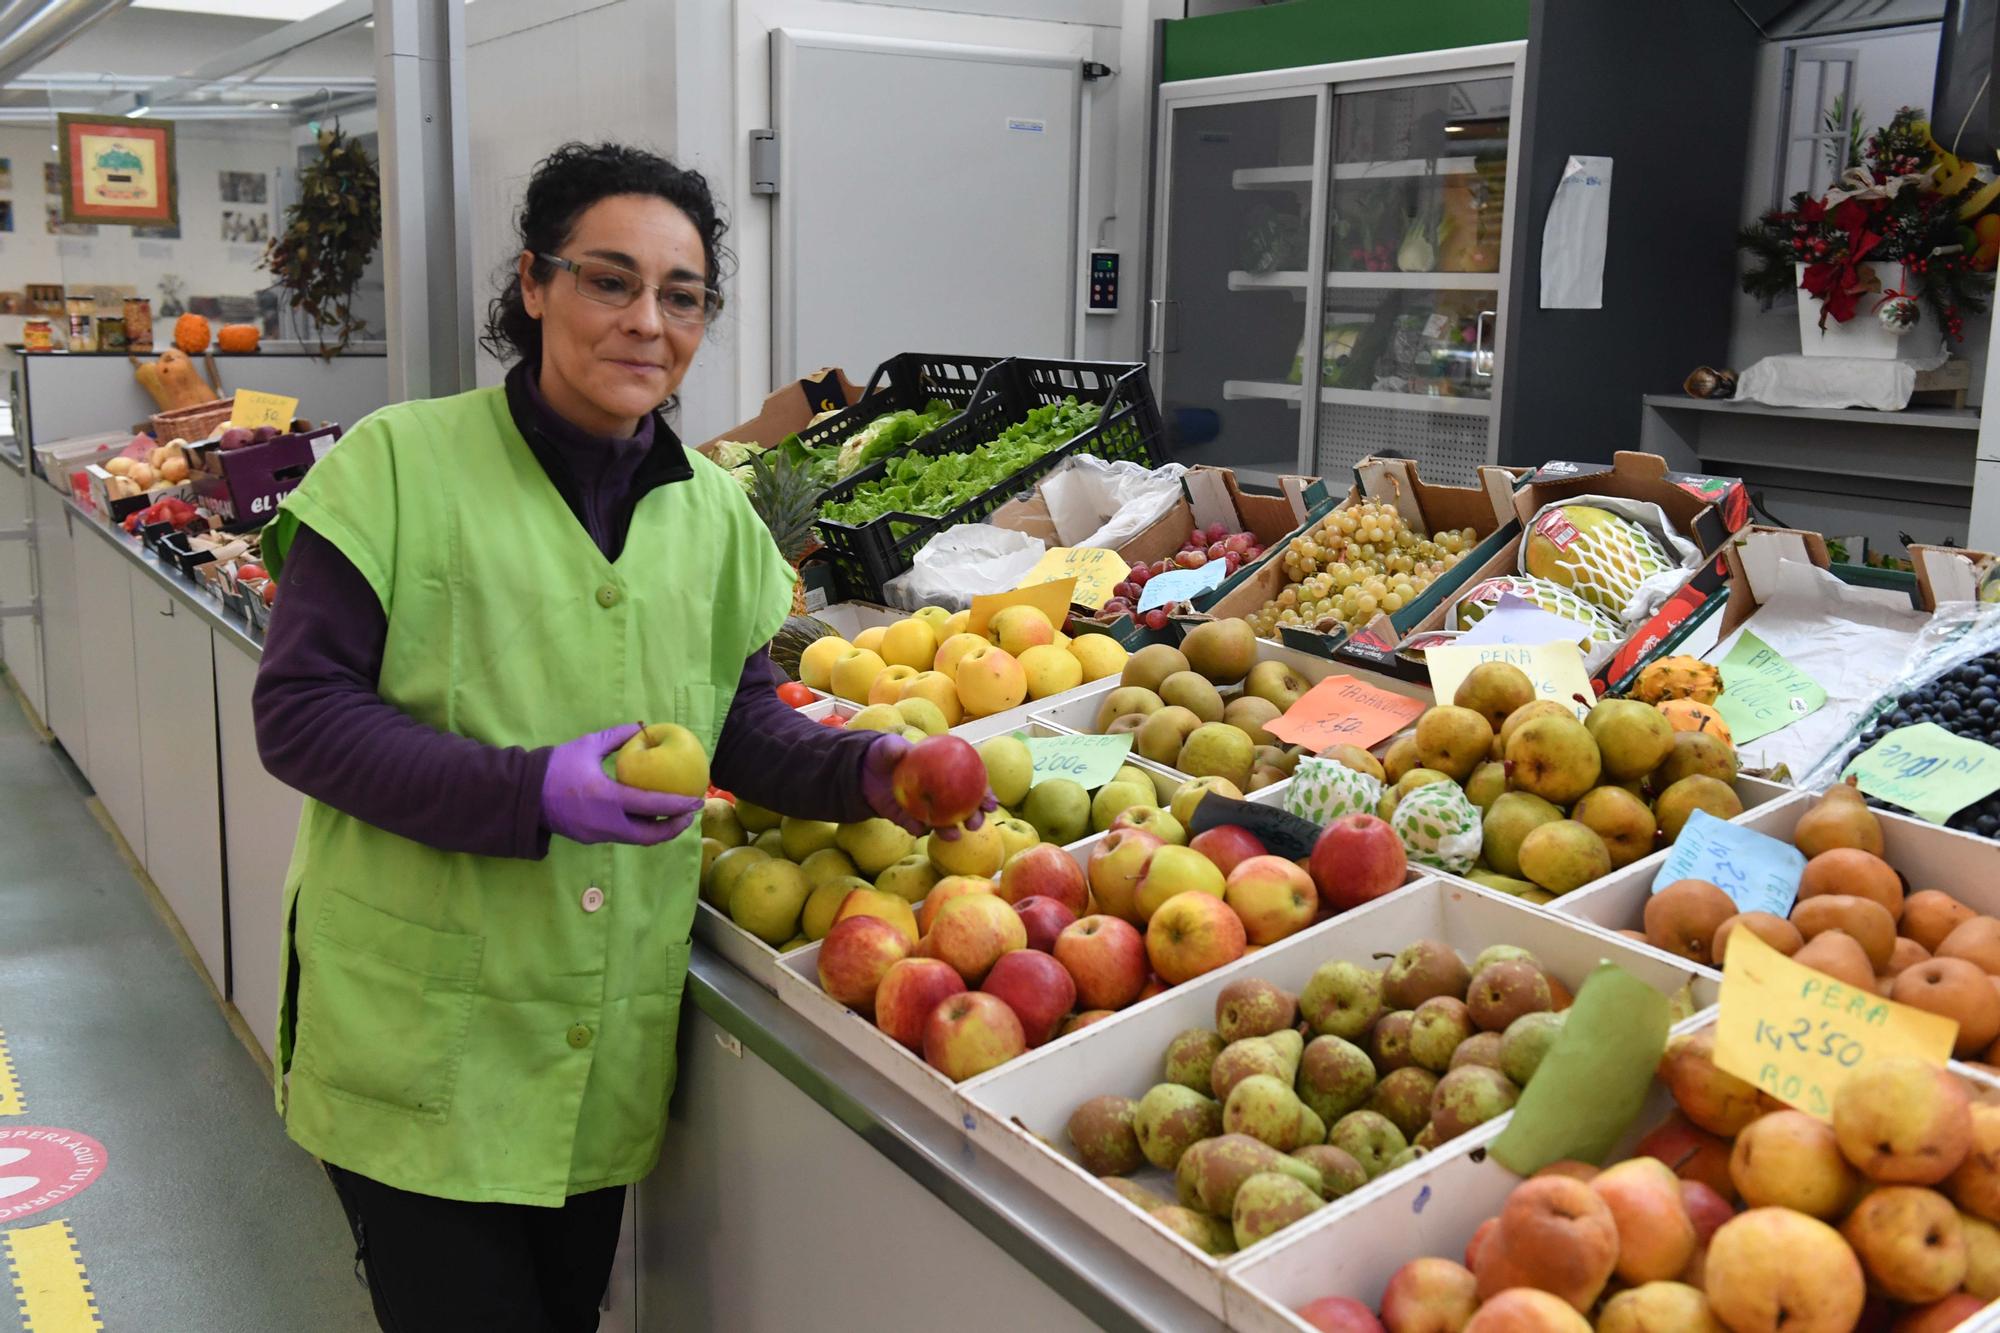 Comerciantes de A Coruña analizan la eliminación del IVA en alimentos básicos